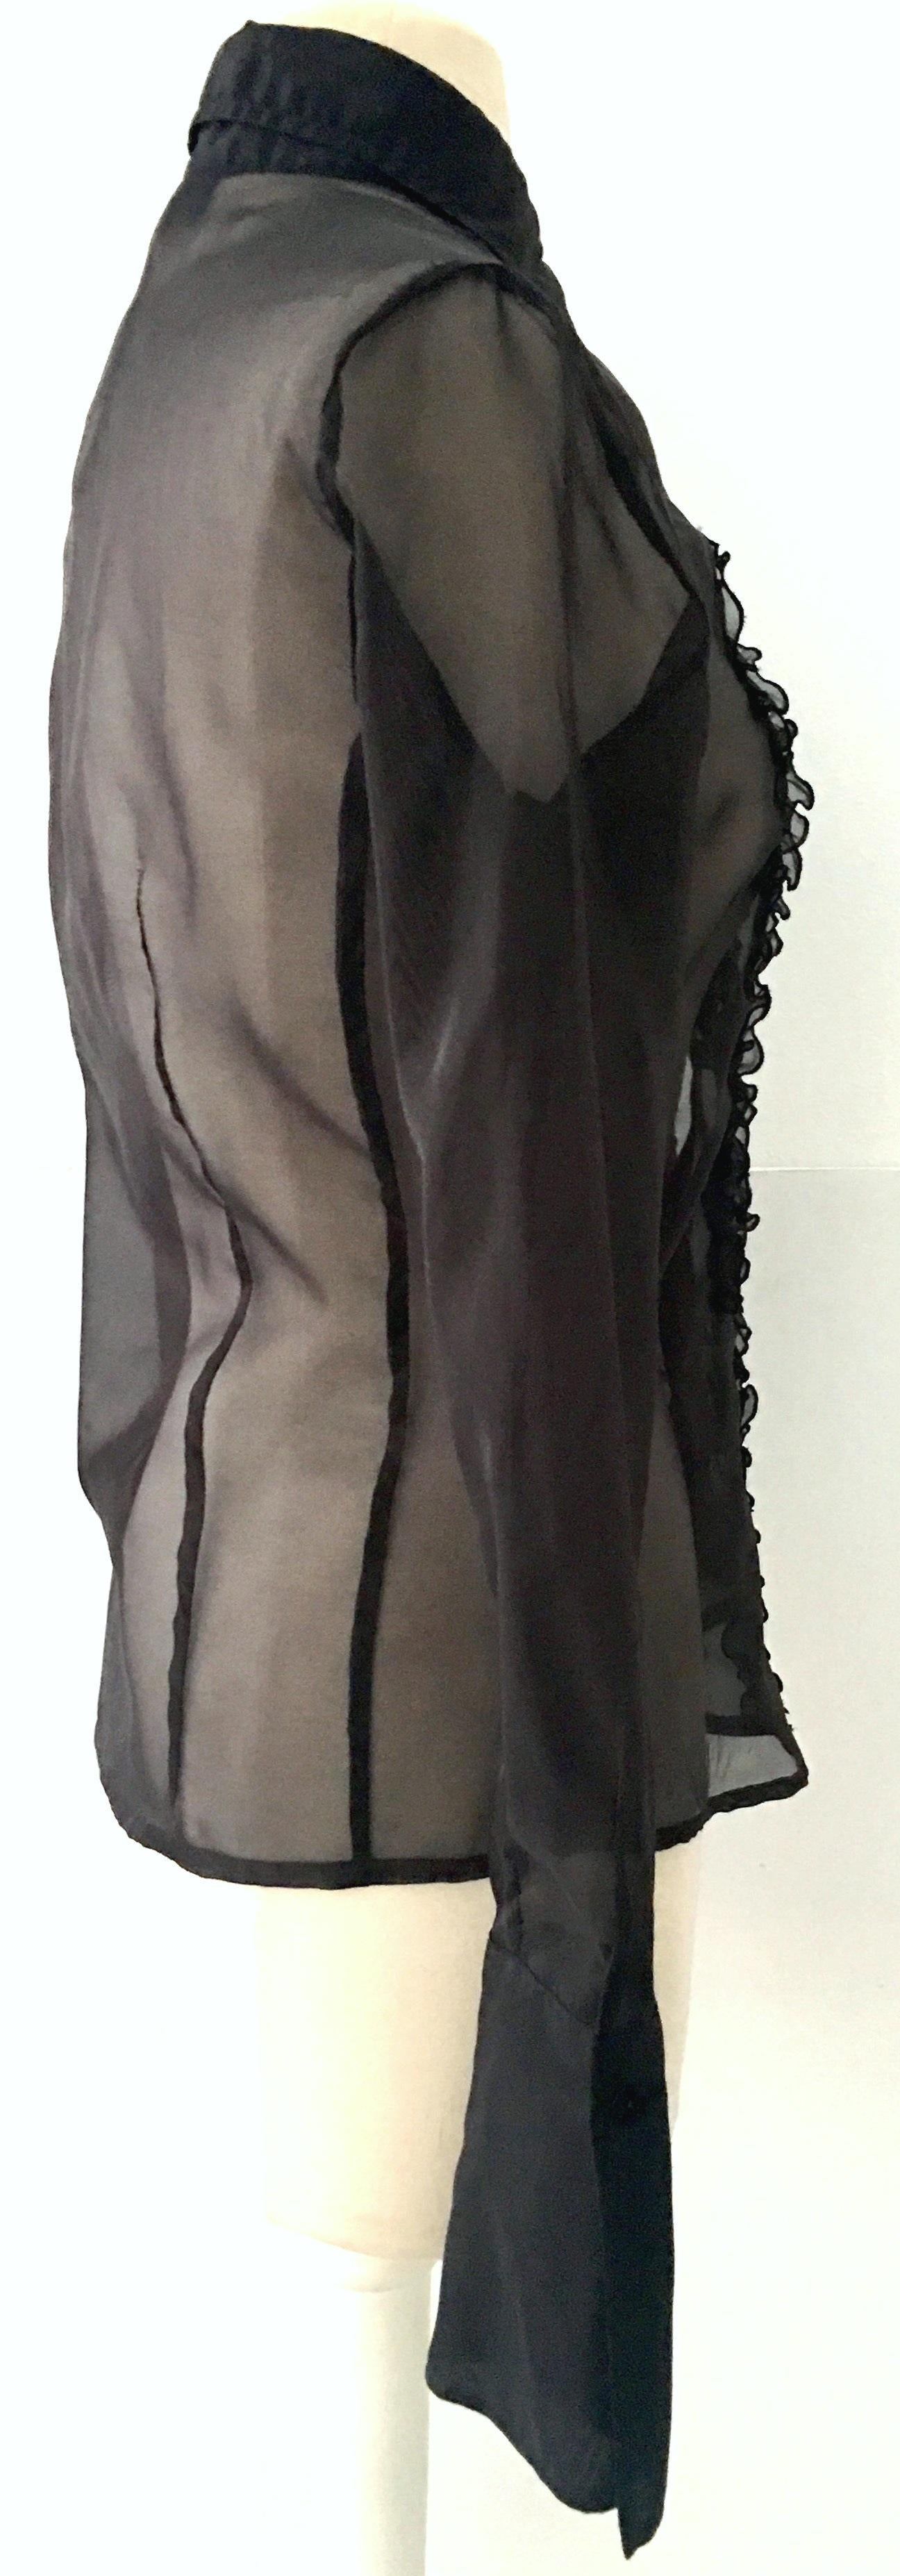 black chiffon ruffle blouse